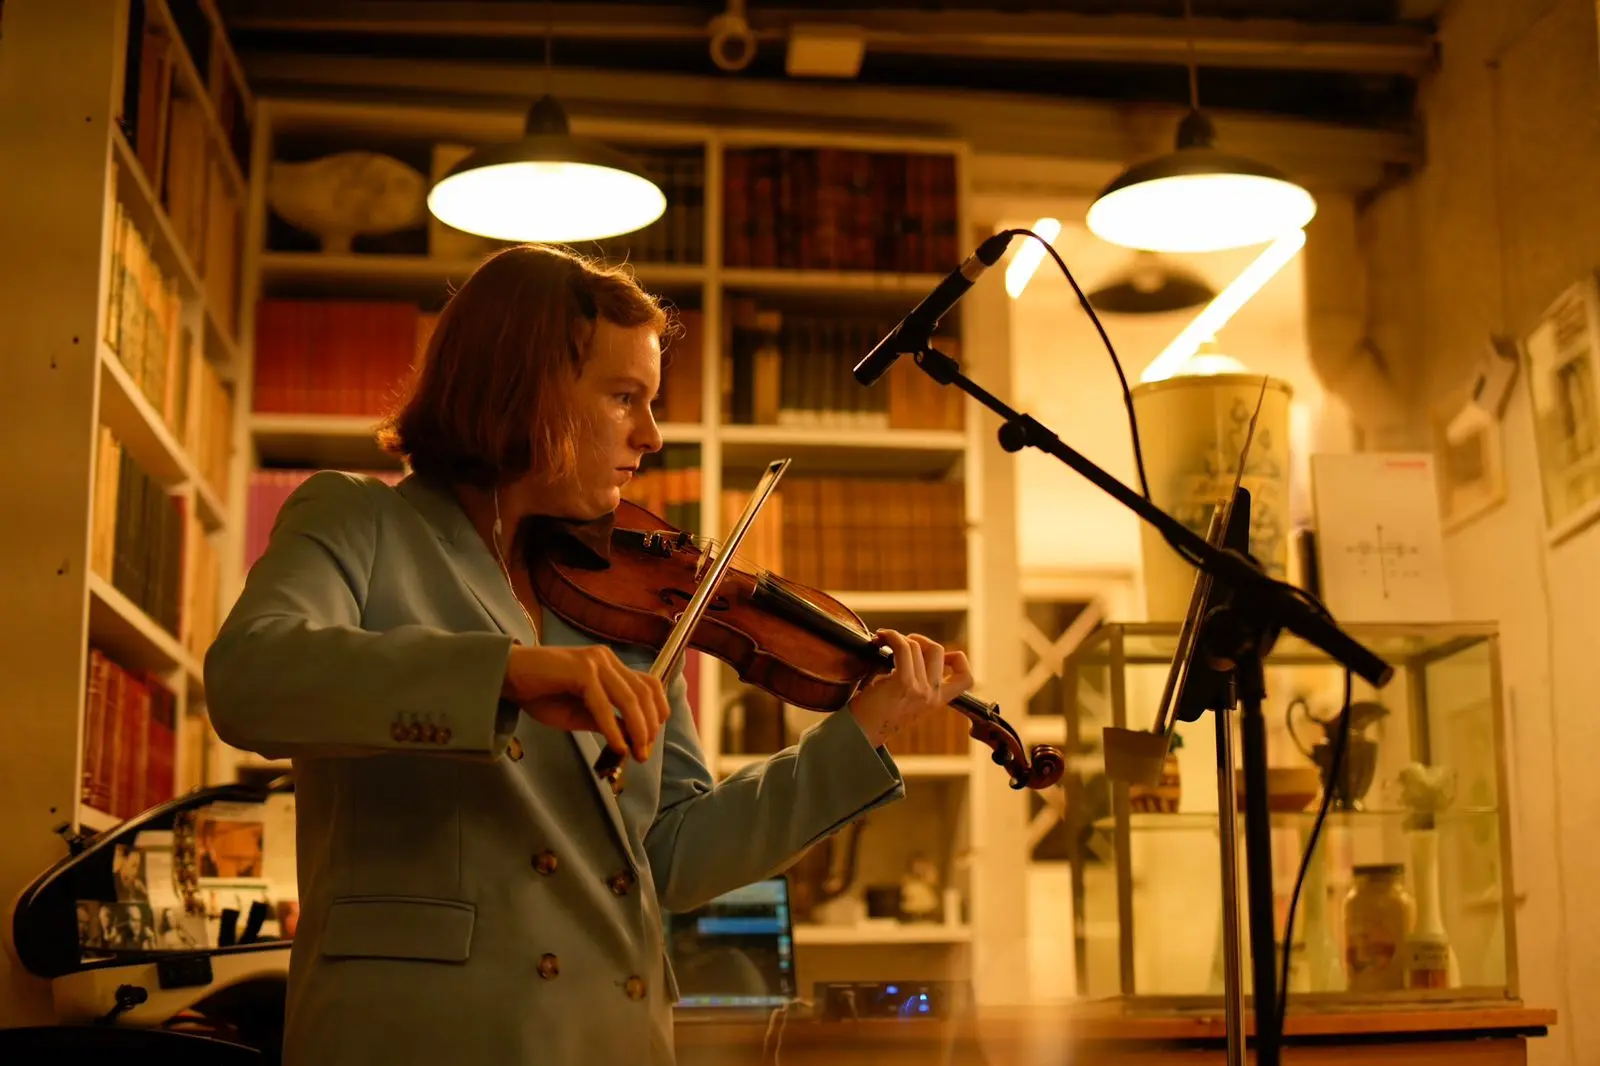 centro nacional de las artes clases de violin - Que se puede estudiar en el INBA